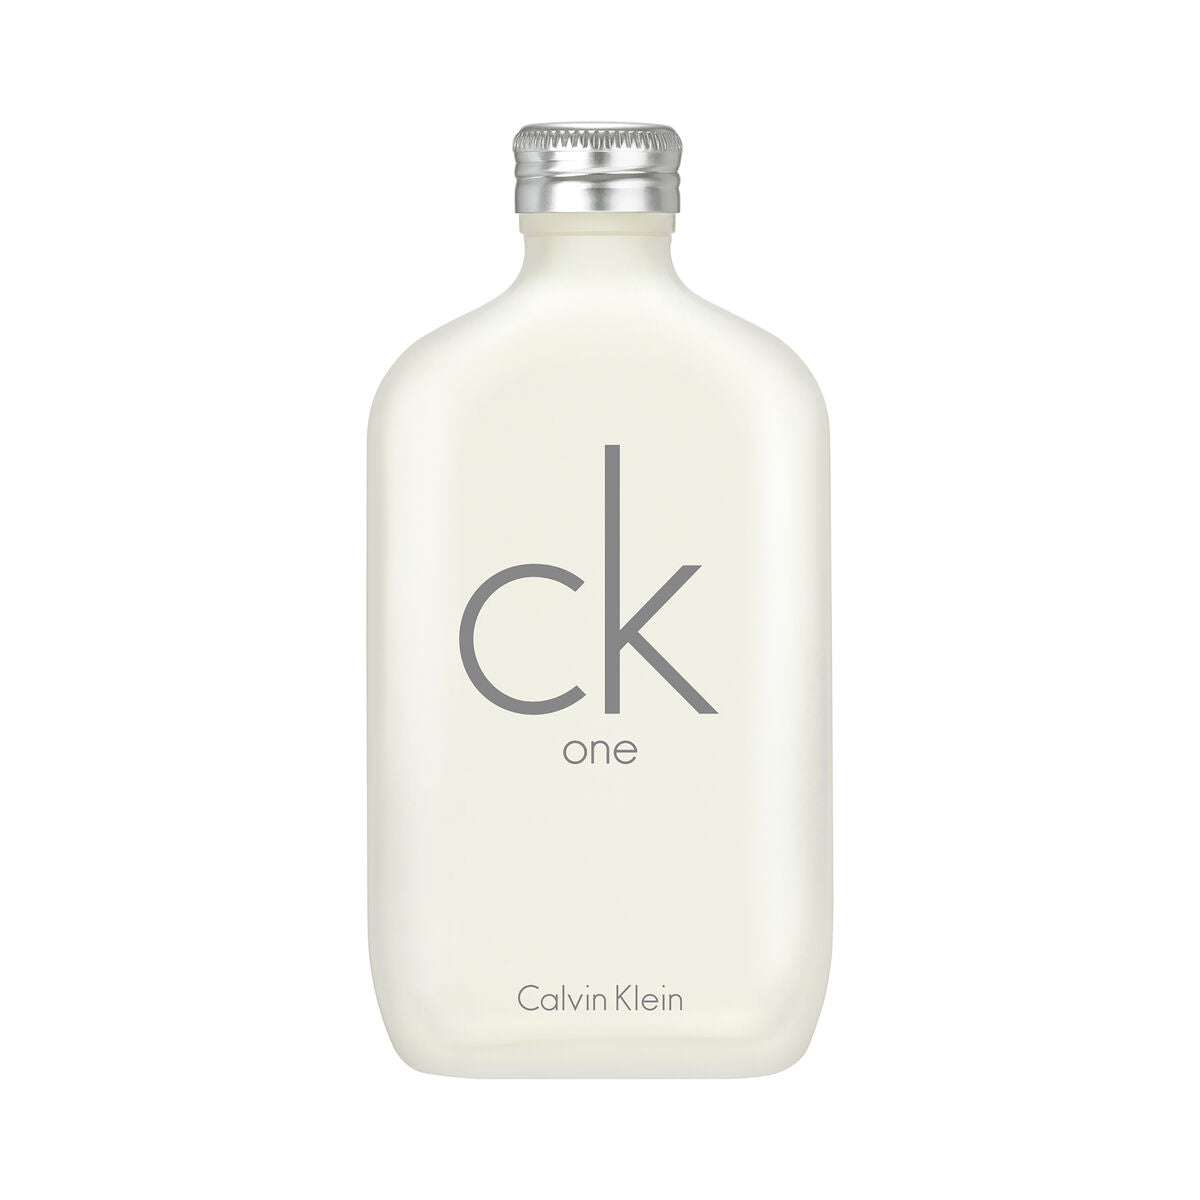 Unisex Perfume Calvin Klein EDT 200 ml ck one (Refurbished A)